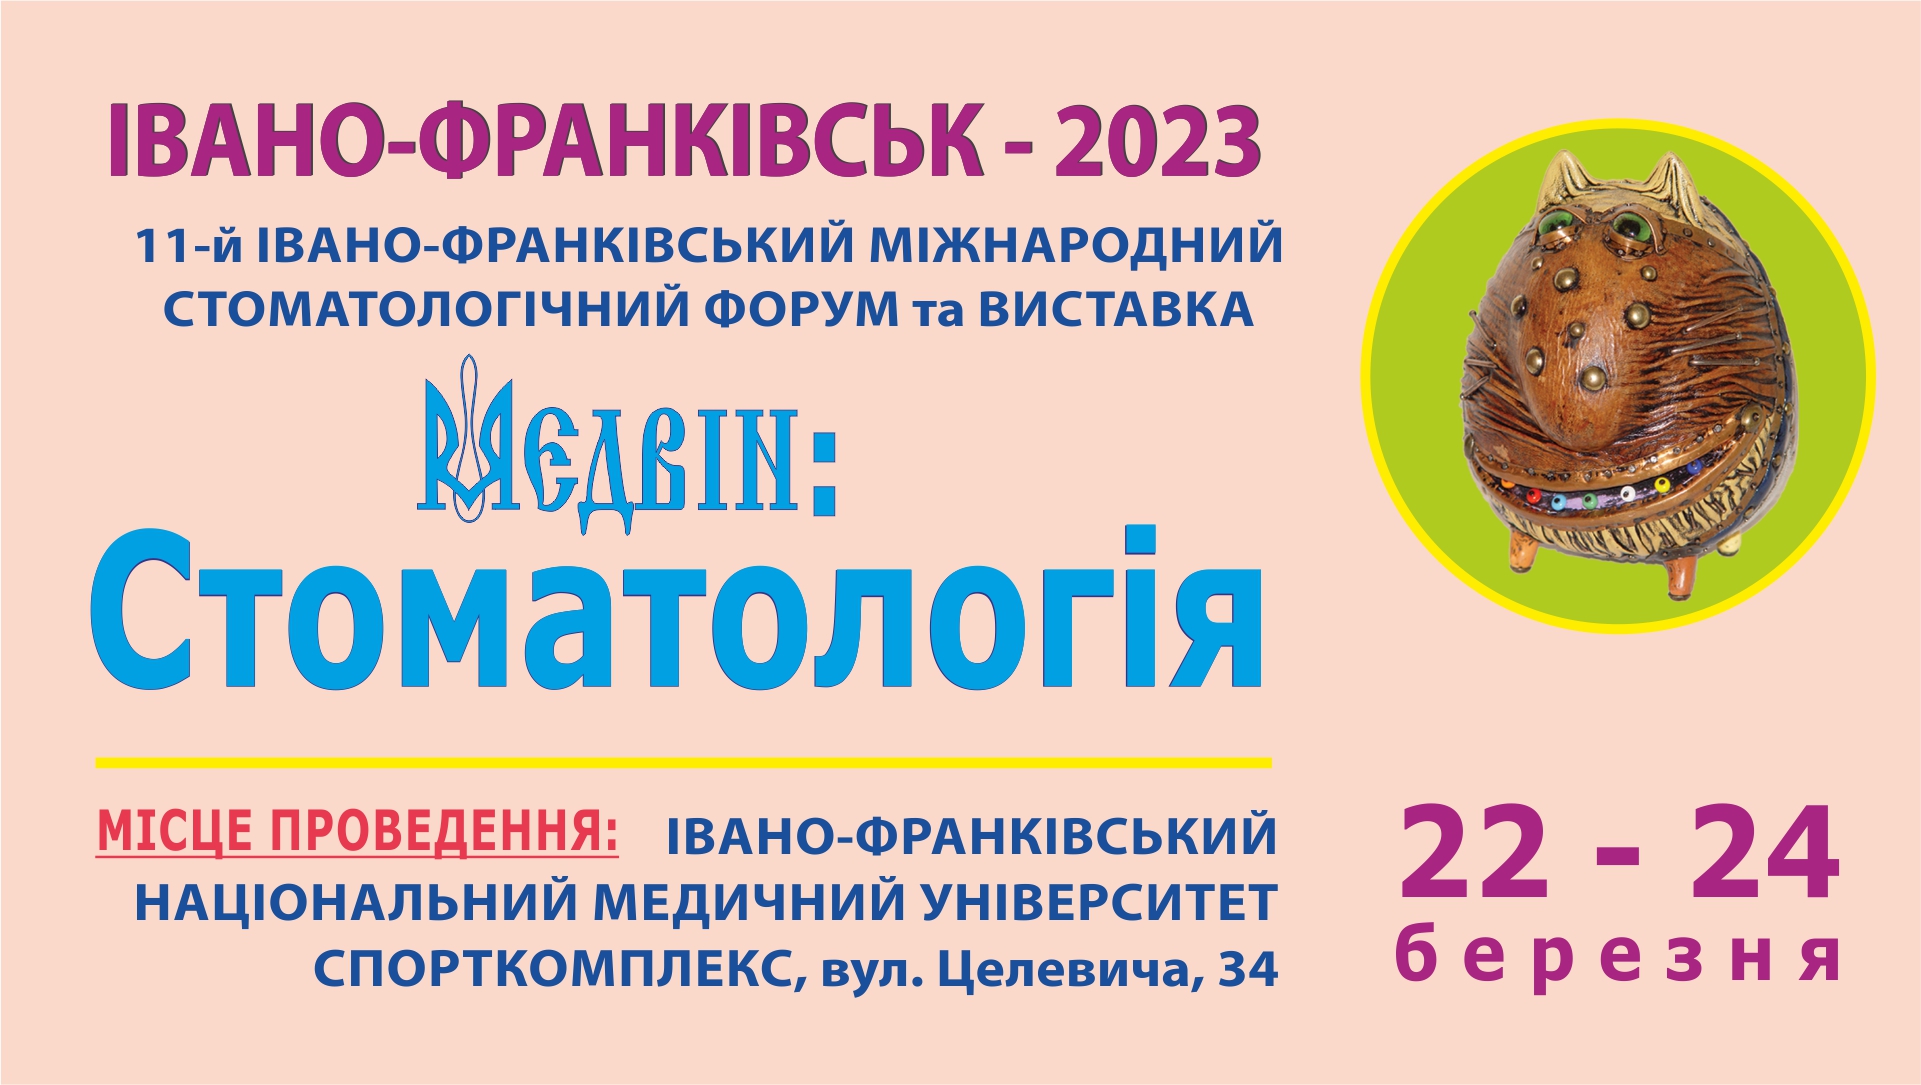 МЕДВІН: Стоматологія - Івано-Франківськ, 2023